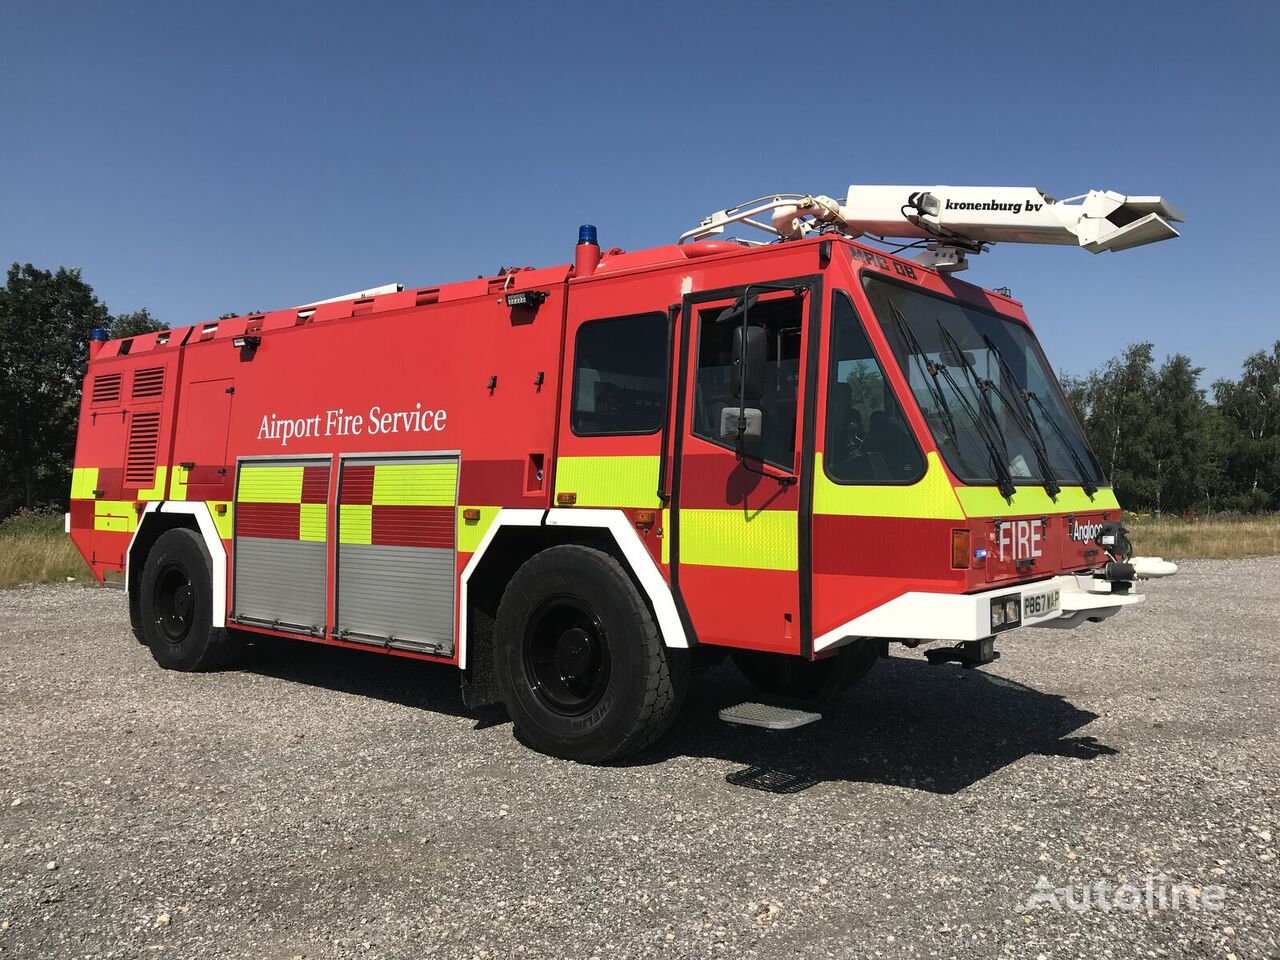 Kronenburg MAC8 airport fire truck